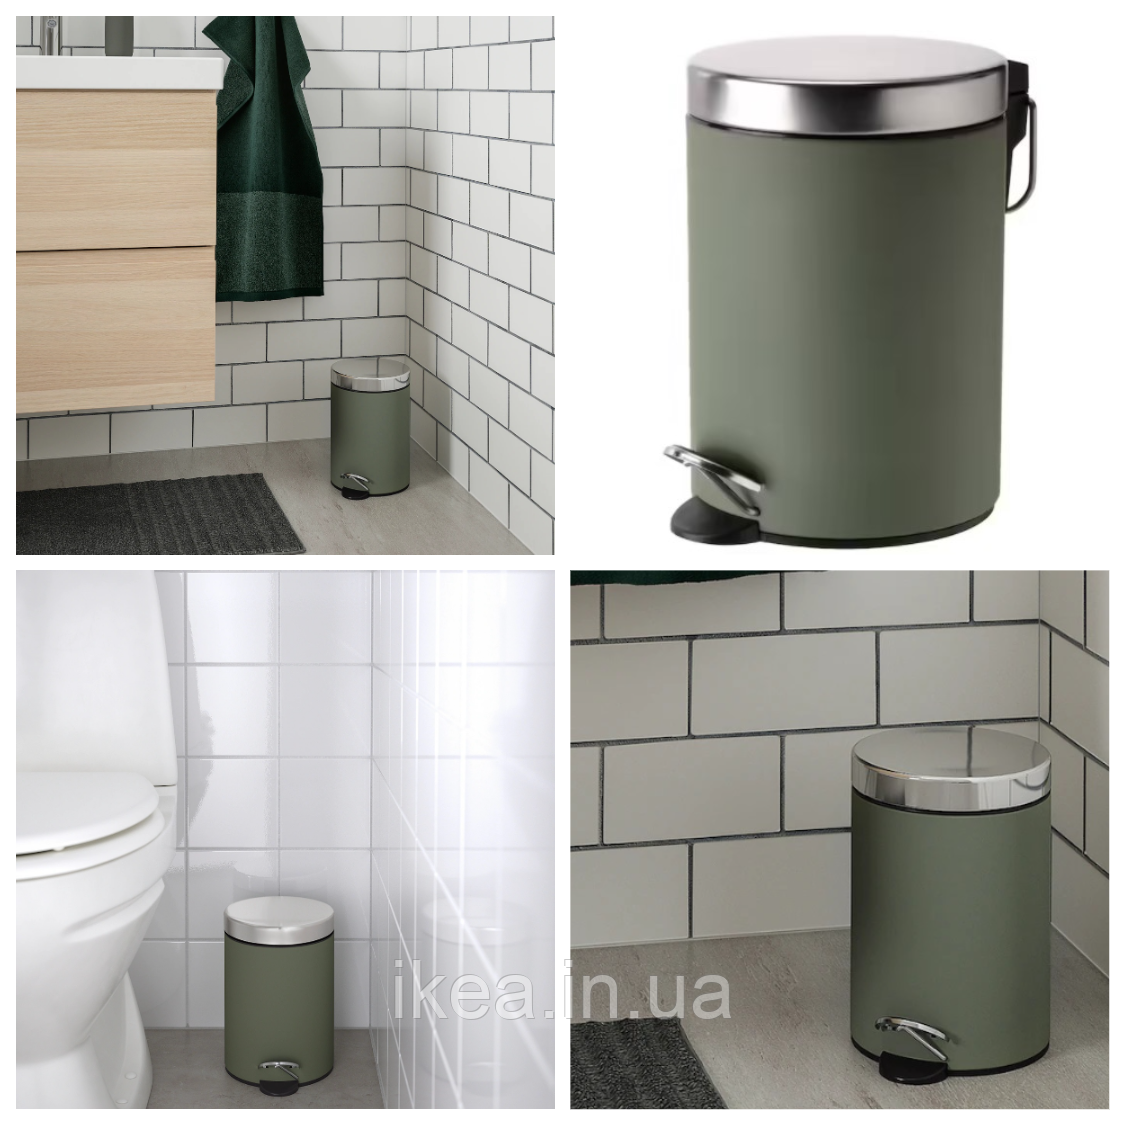 Відро з педалькой сміттєве у ванну кімнату IKEA EKOLN 3 літри сіро-зелений ящик ІКЕА ЕКОЛЬН